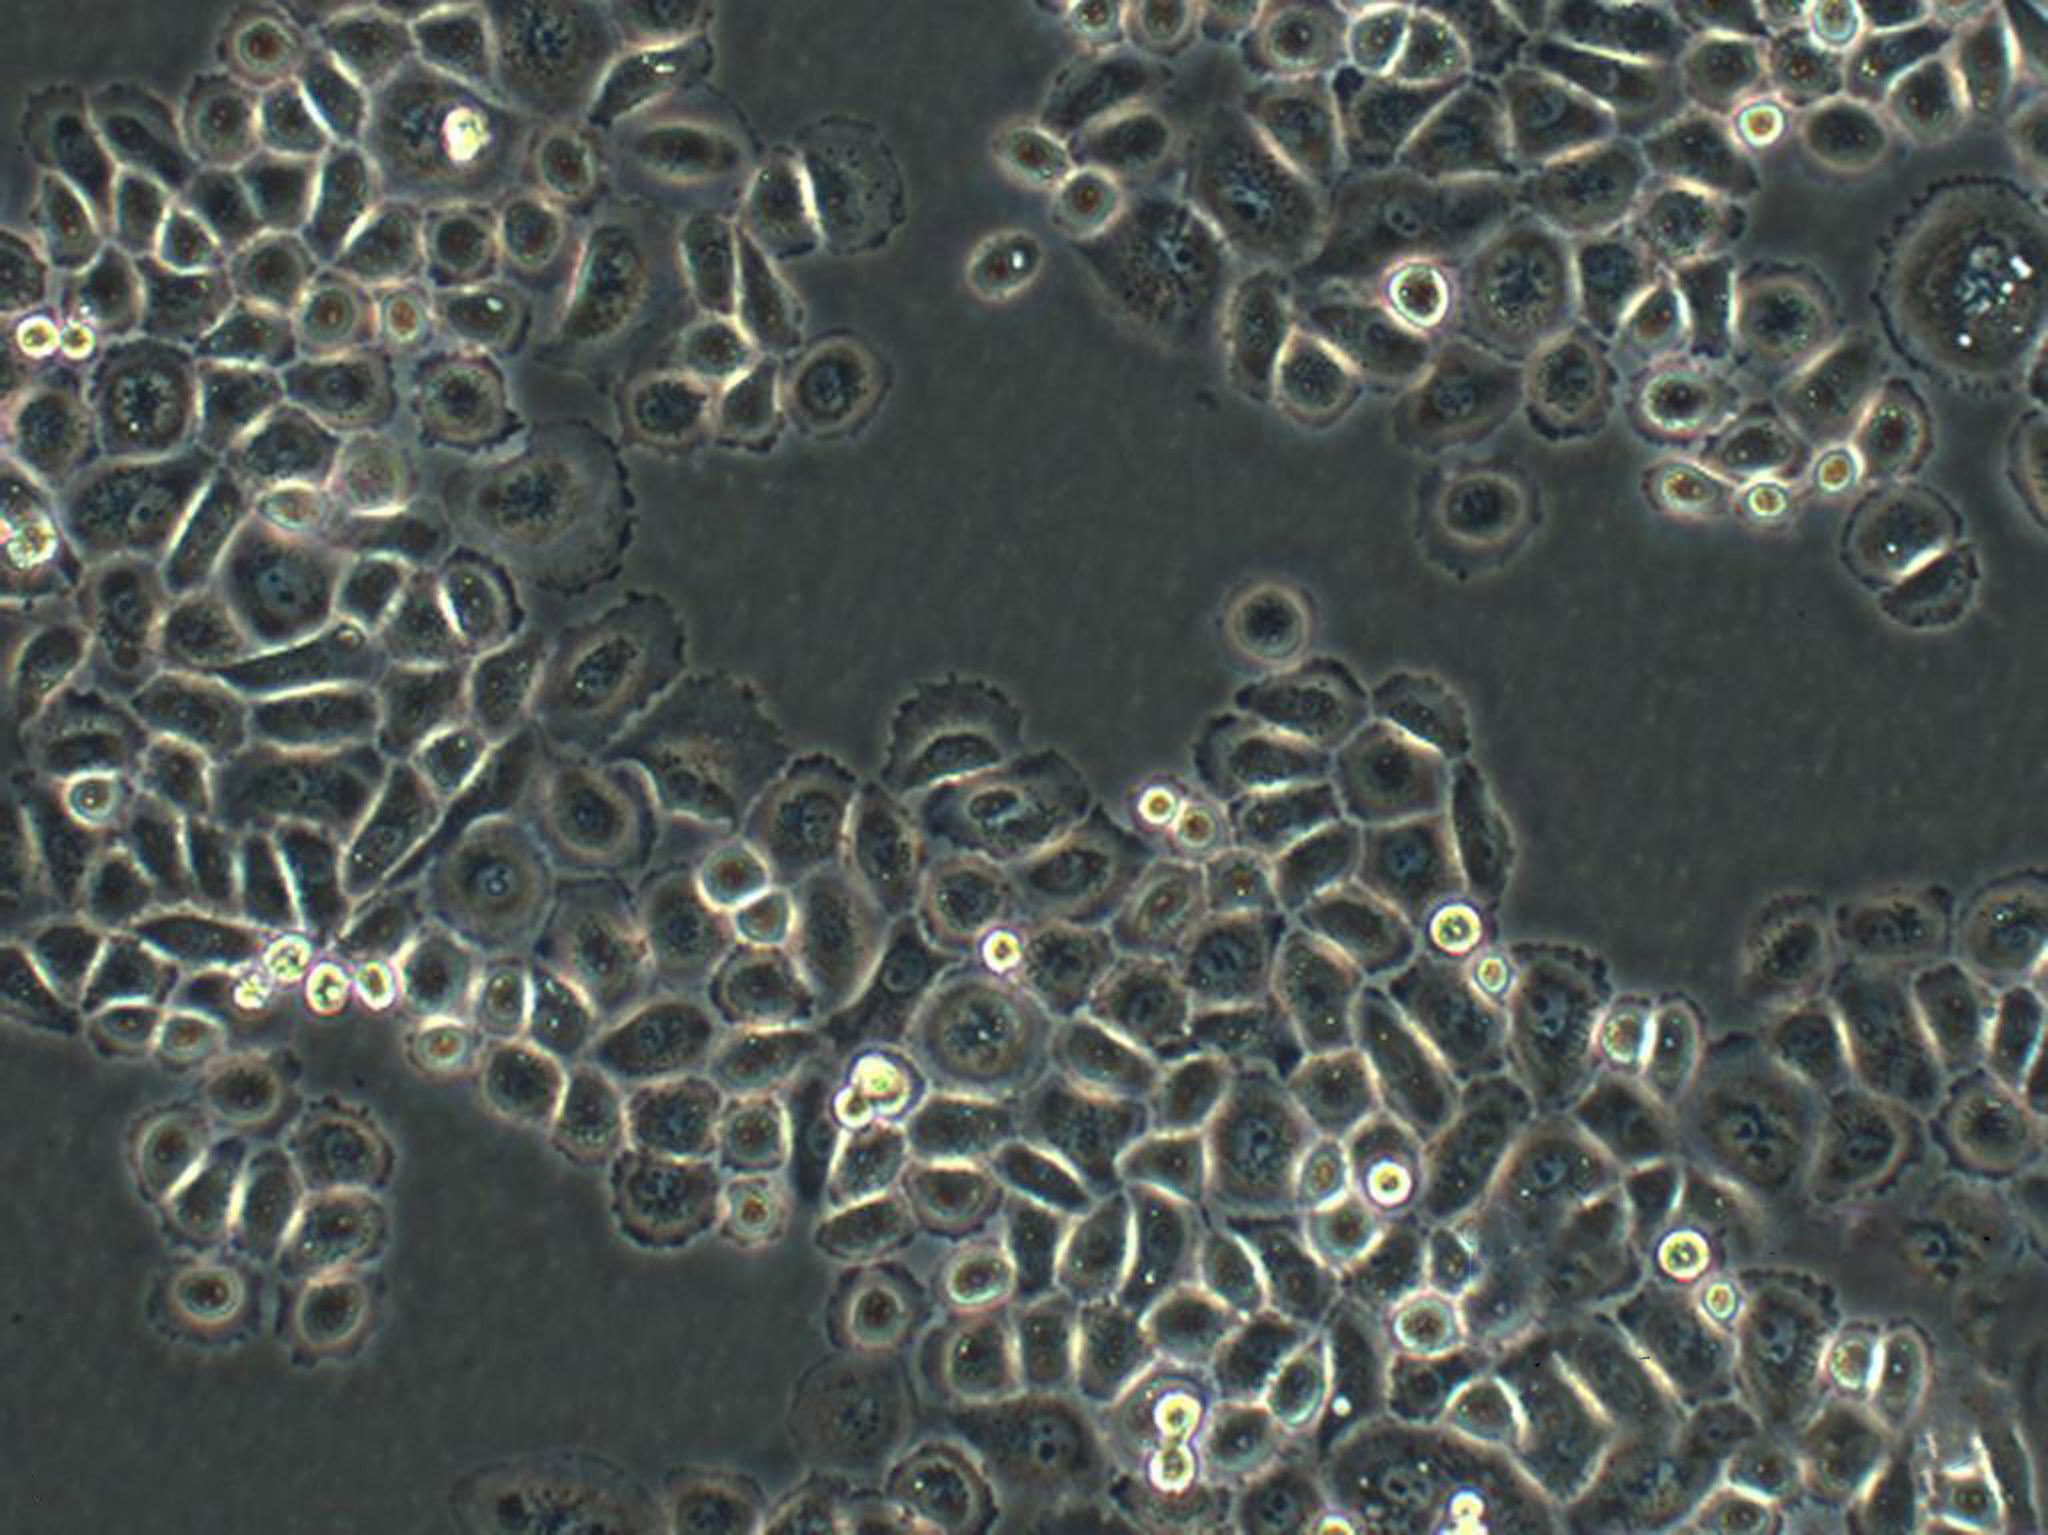 IOSE-29 Cells|人卵巢上皮细胞系,IOSE-29 Cells